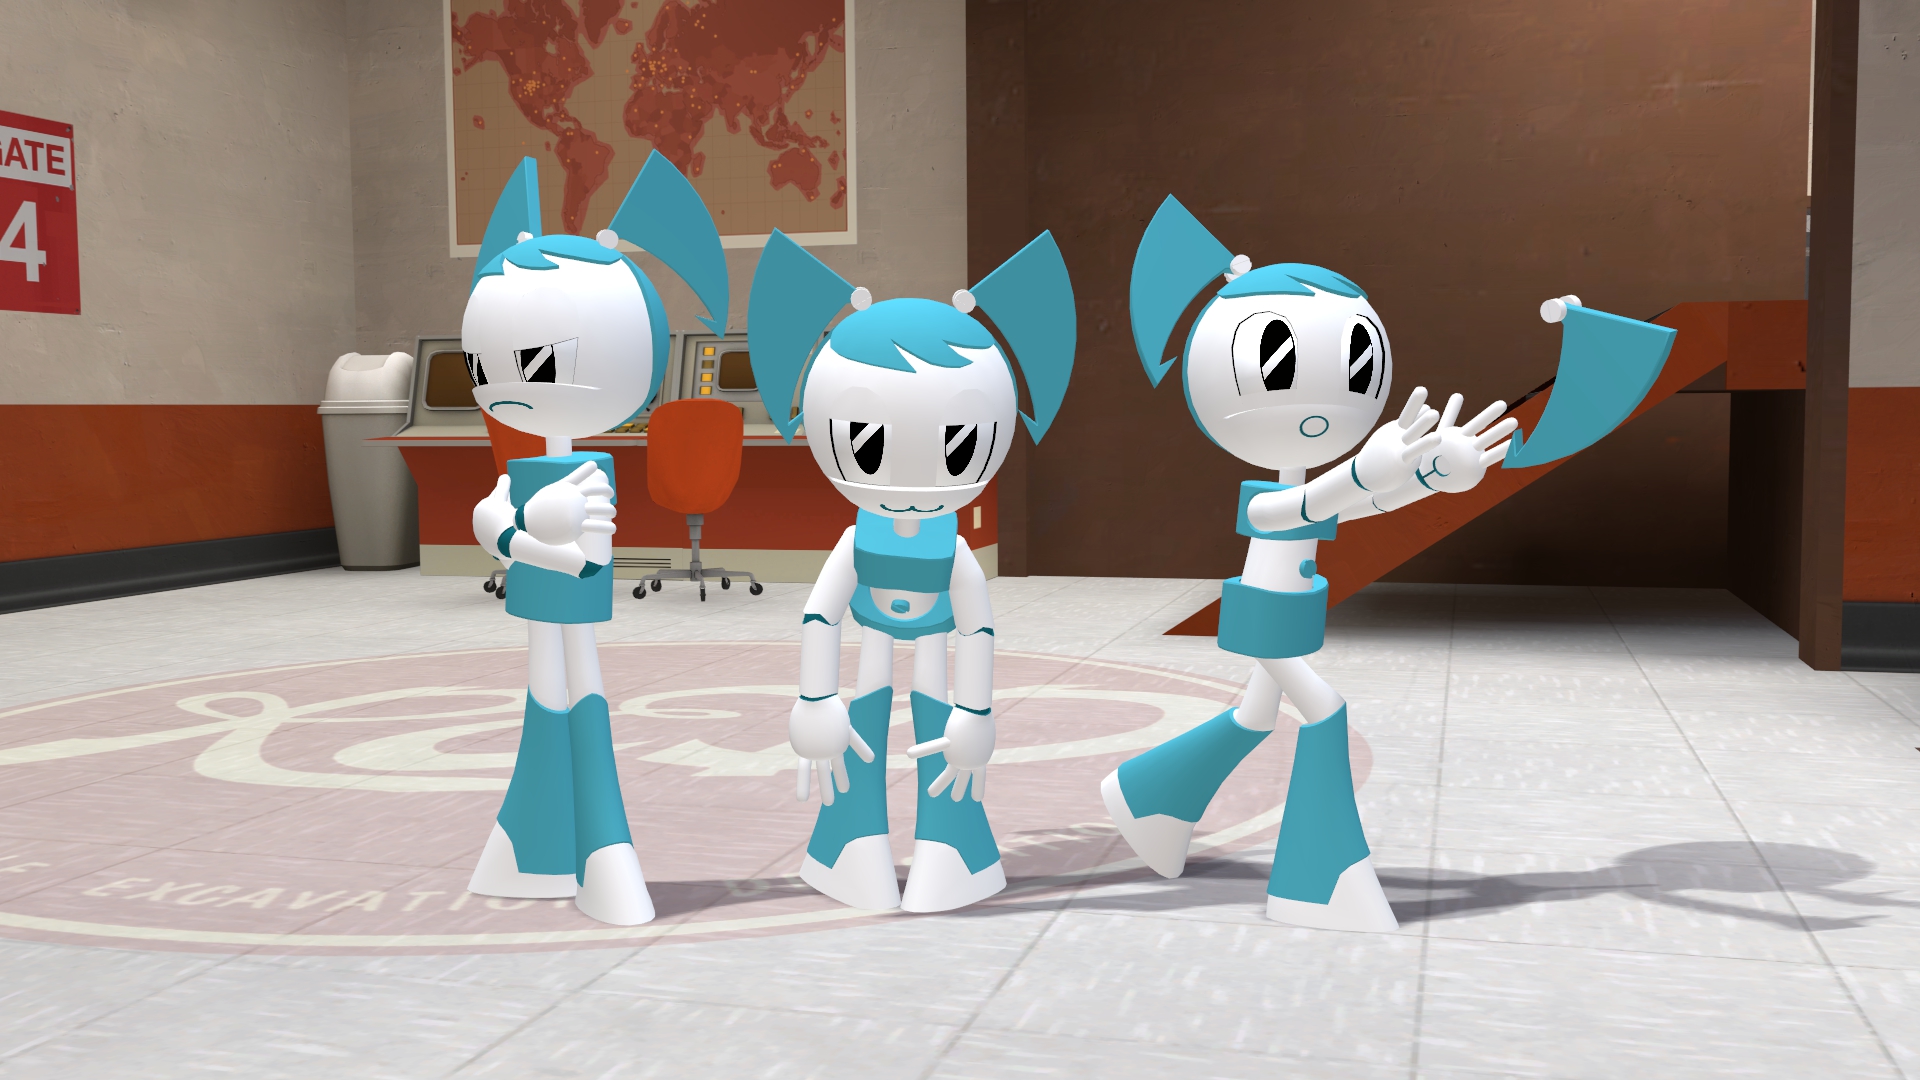 Девочка робот танцует